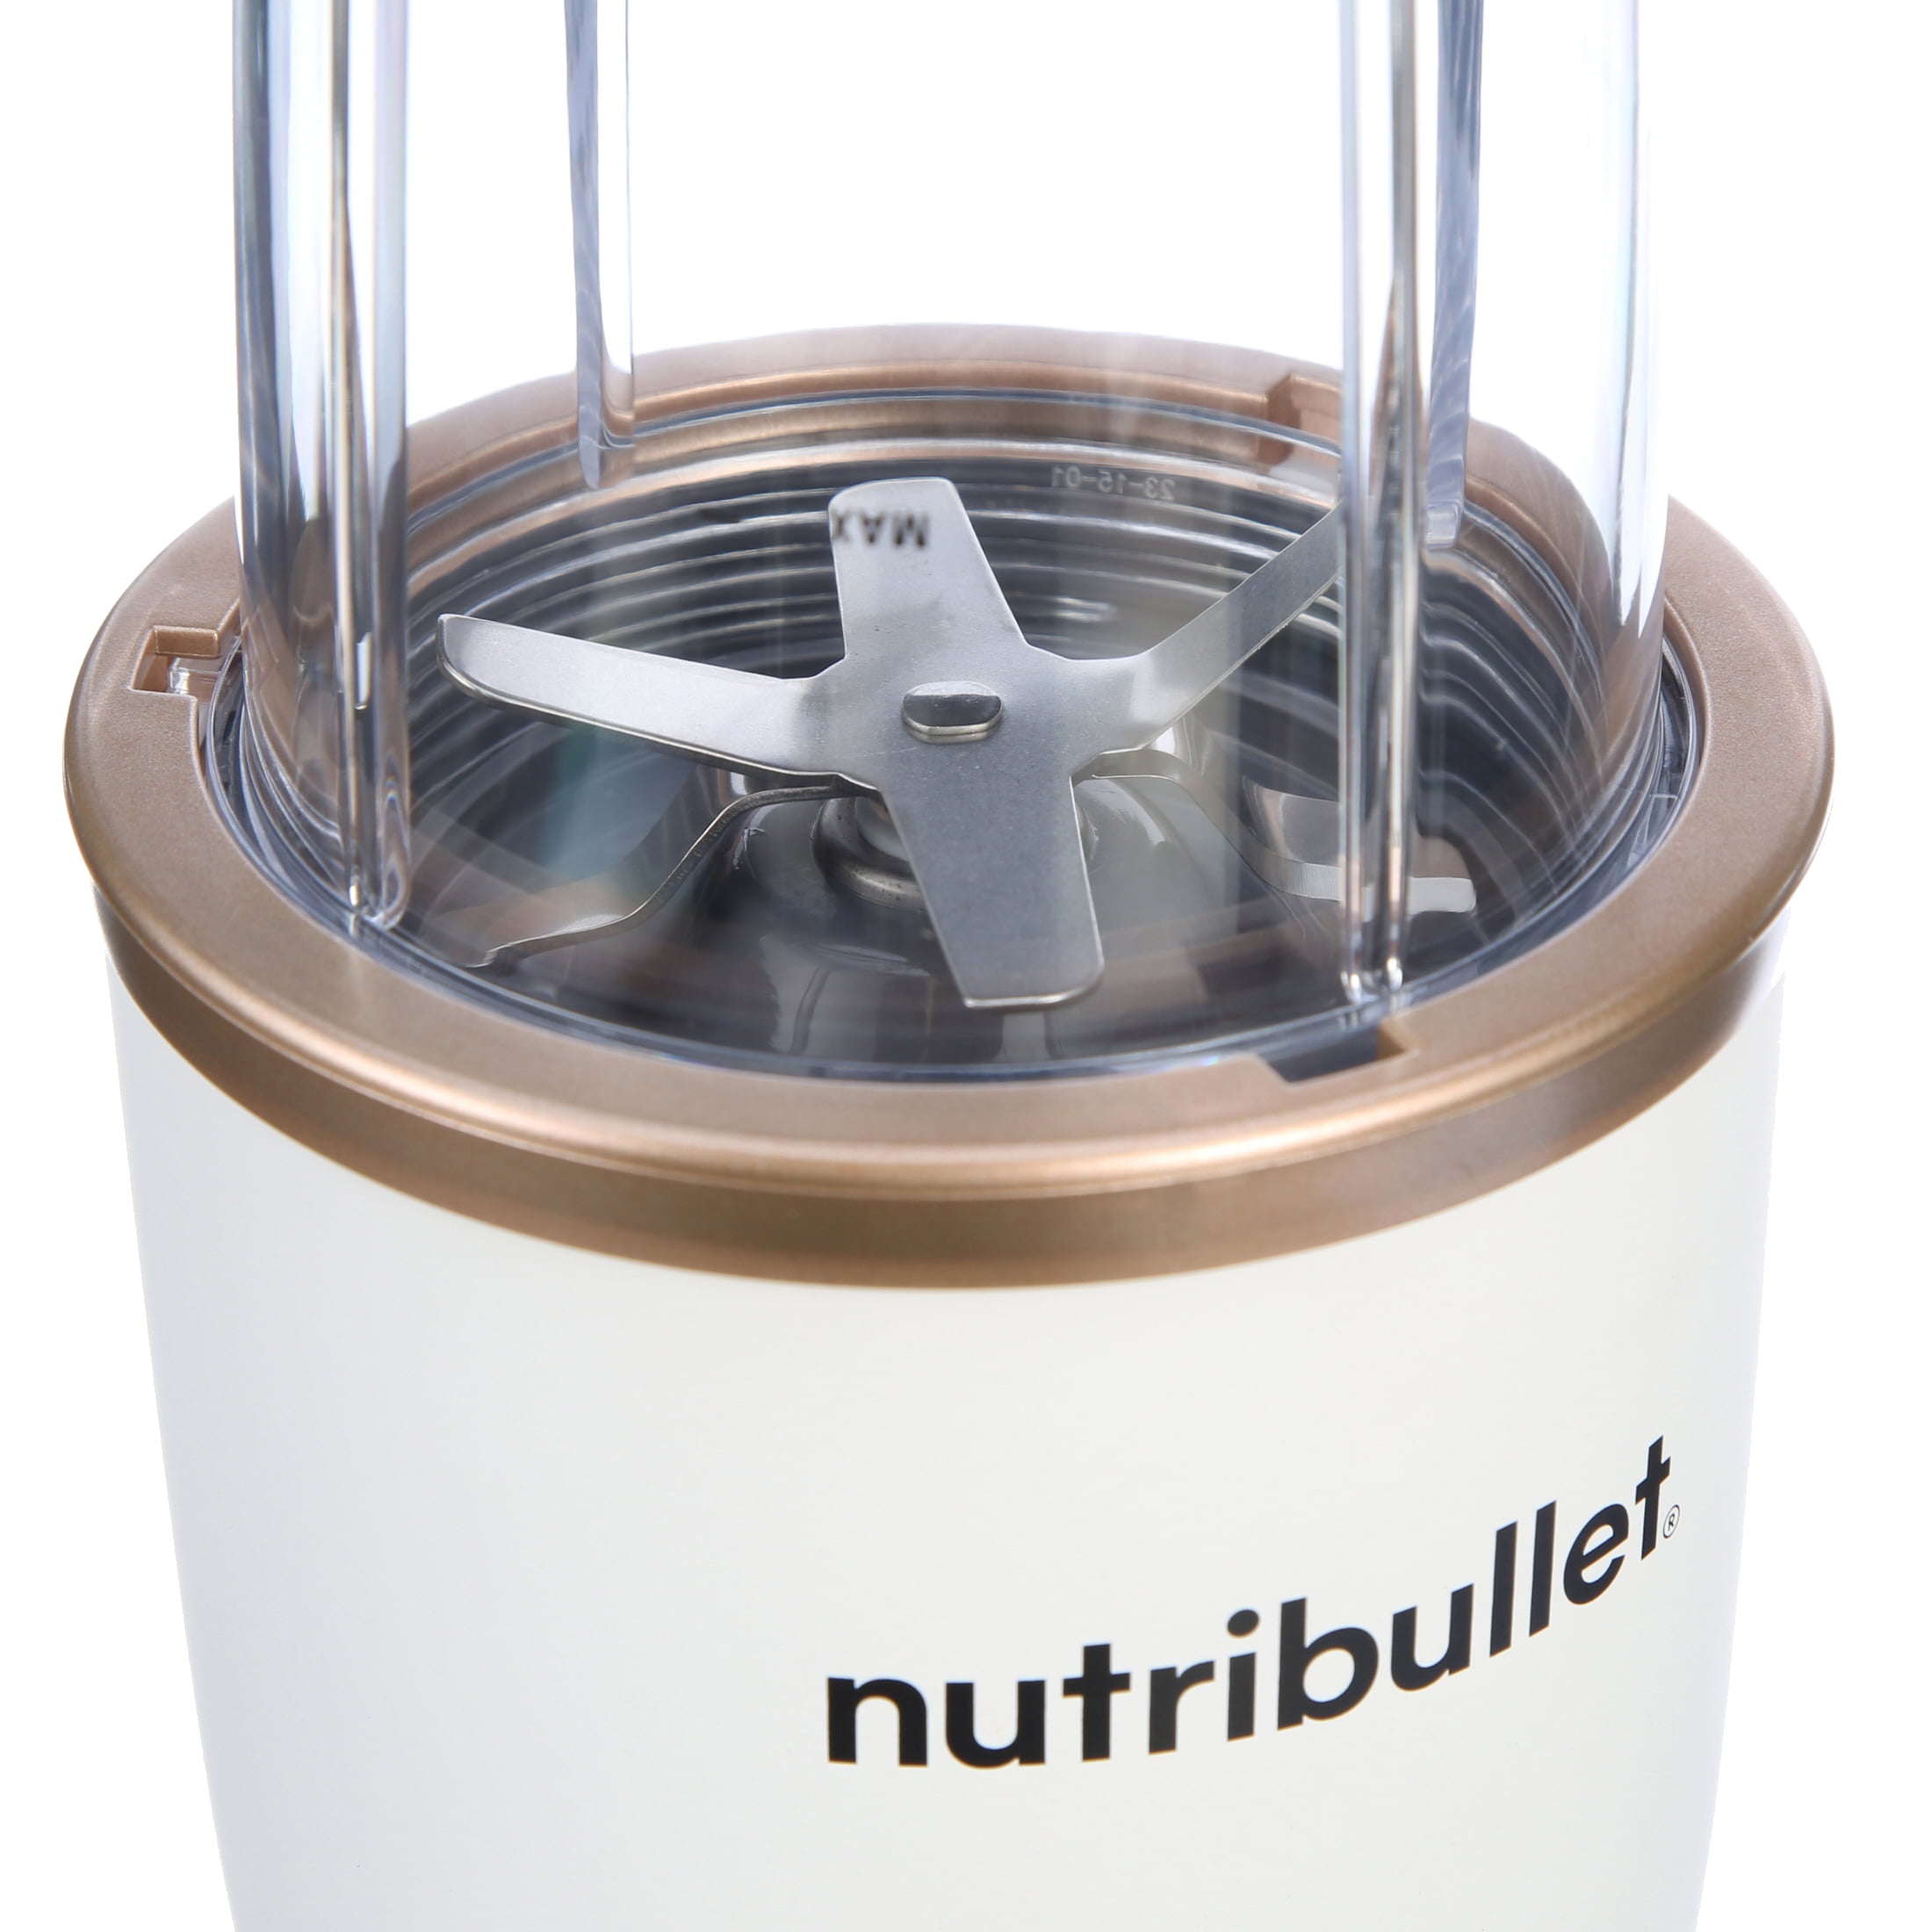 Nutribullet 500-Watt Personal Blender Kit - Save 25%